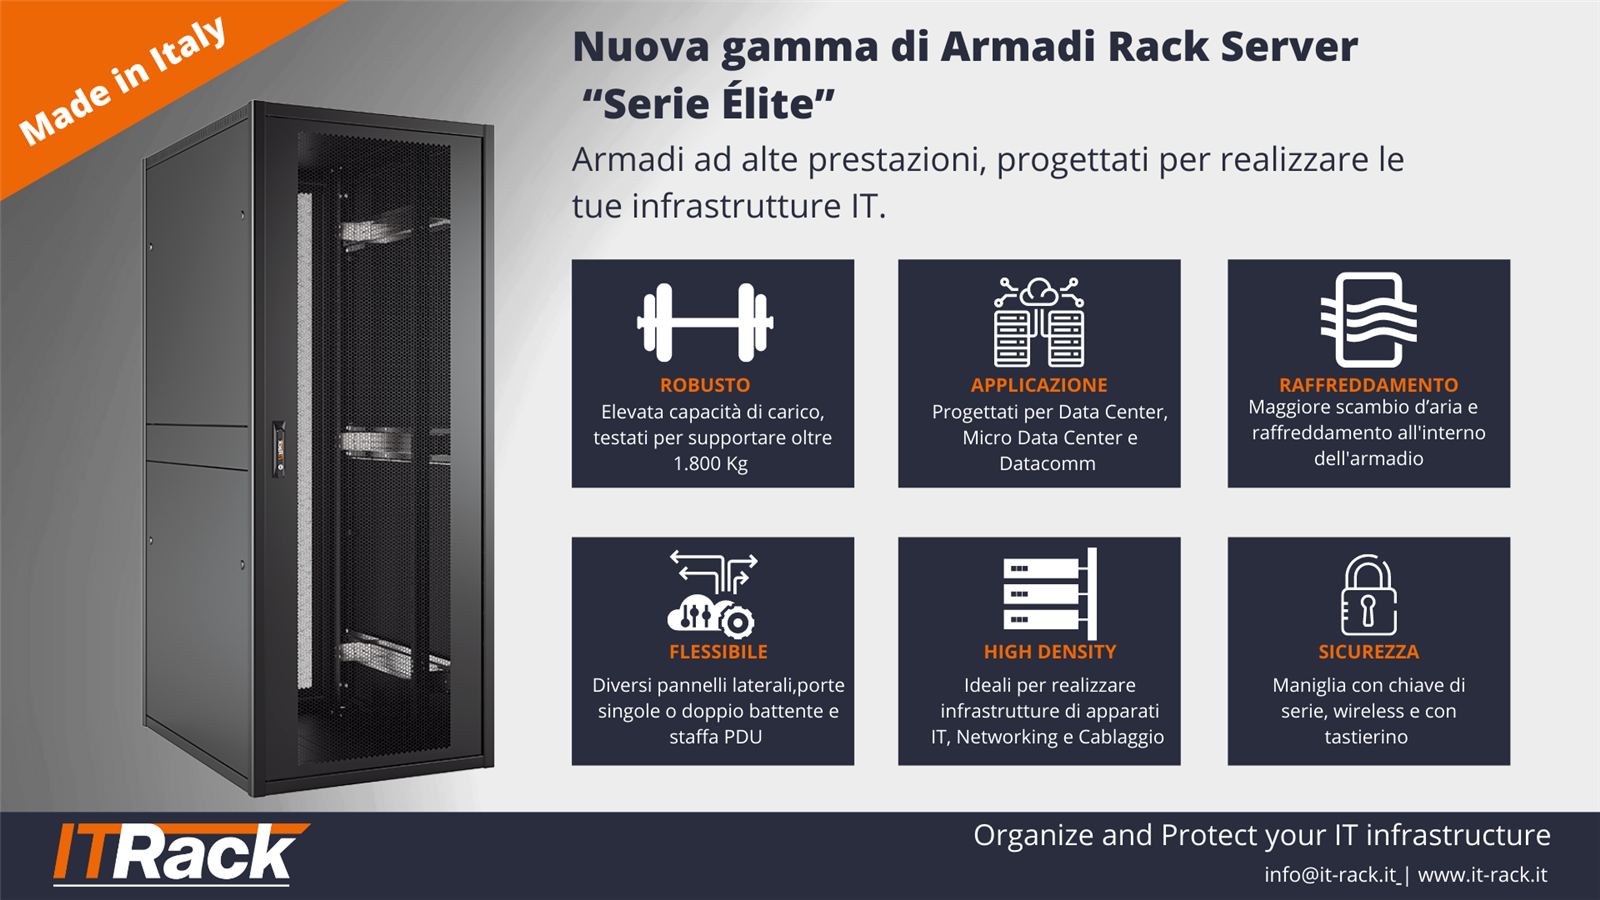 Armadi Server ITRack Serie Elite caratteristiche distribuiti da Coel Distribution